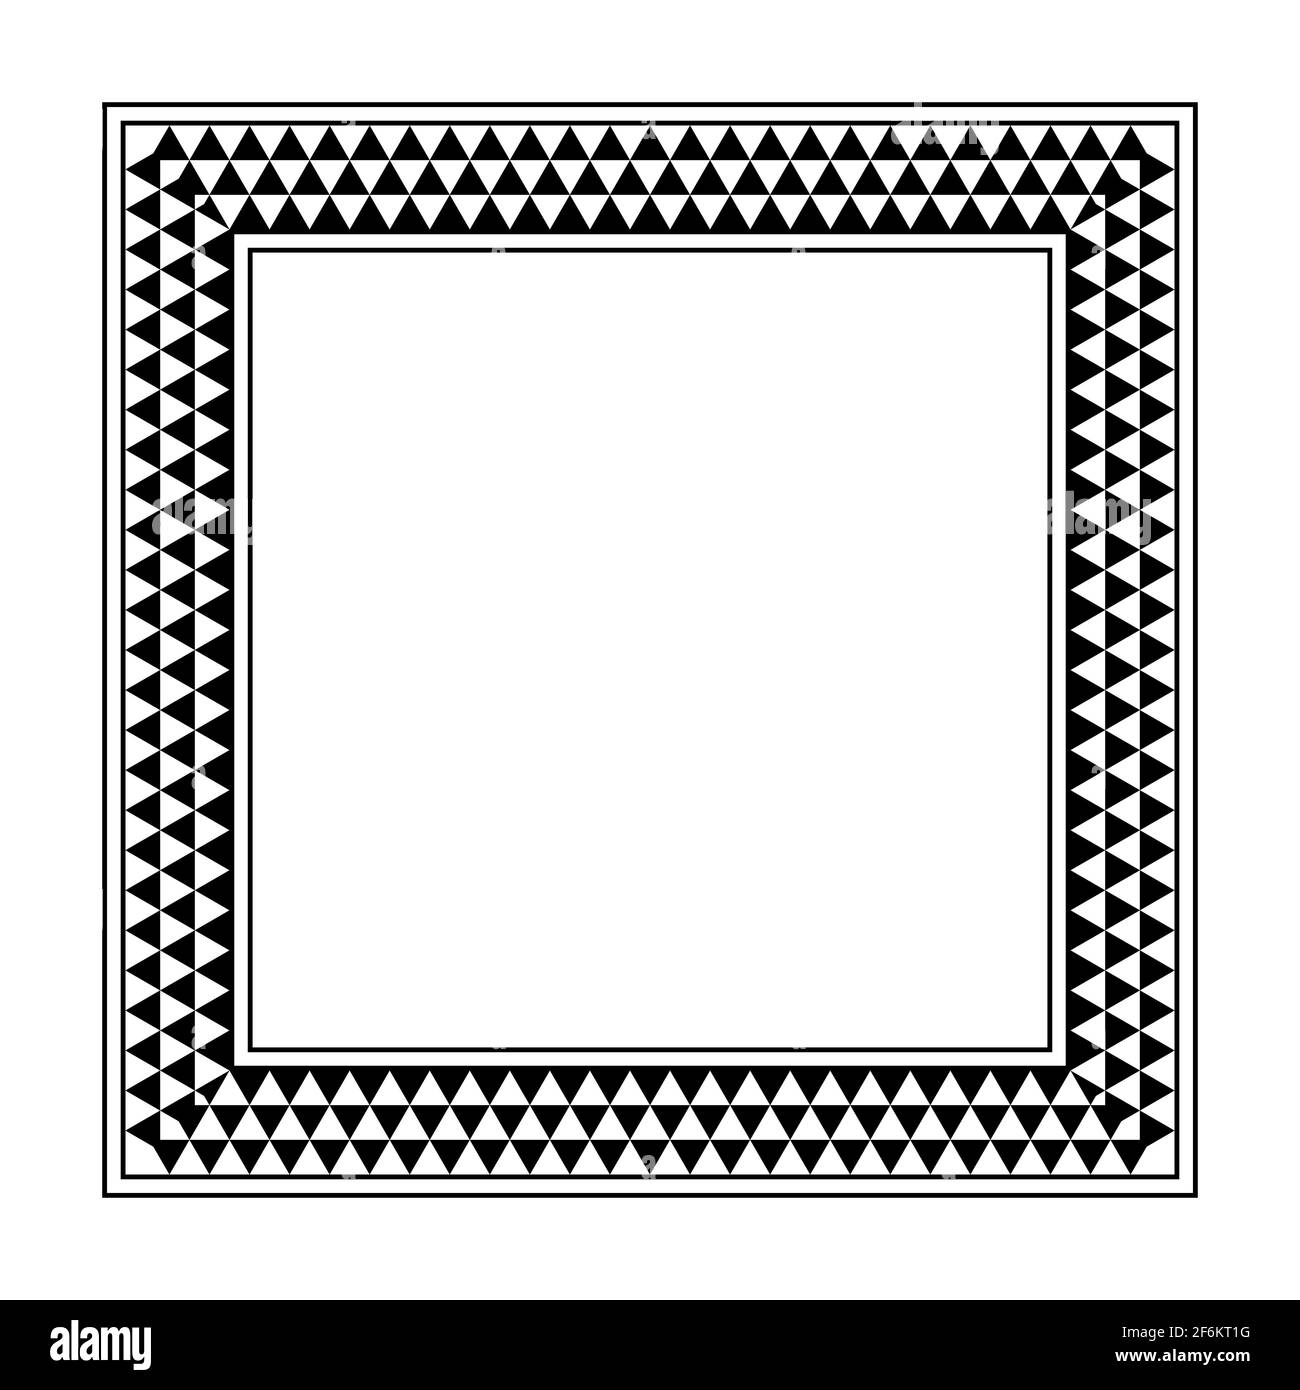 Marco cuadrado con patrón de cuadros triangulares. Borde oblongo con patrón serrado, que consiste en tres filas de triángulos alternantes negros y blancos. Foto de stock